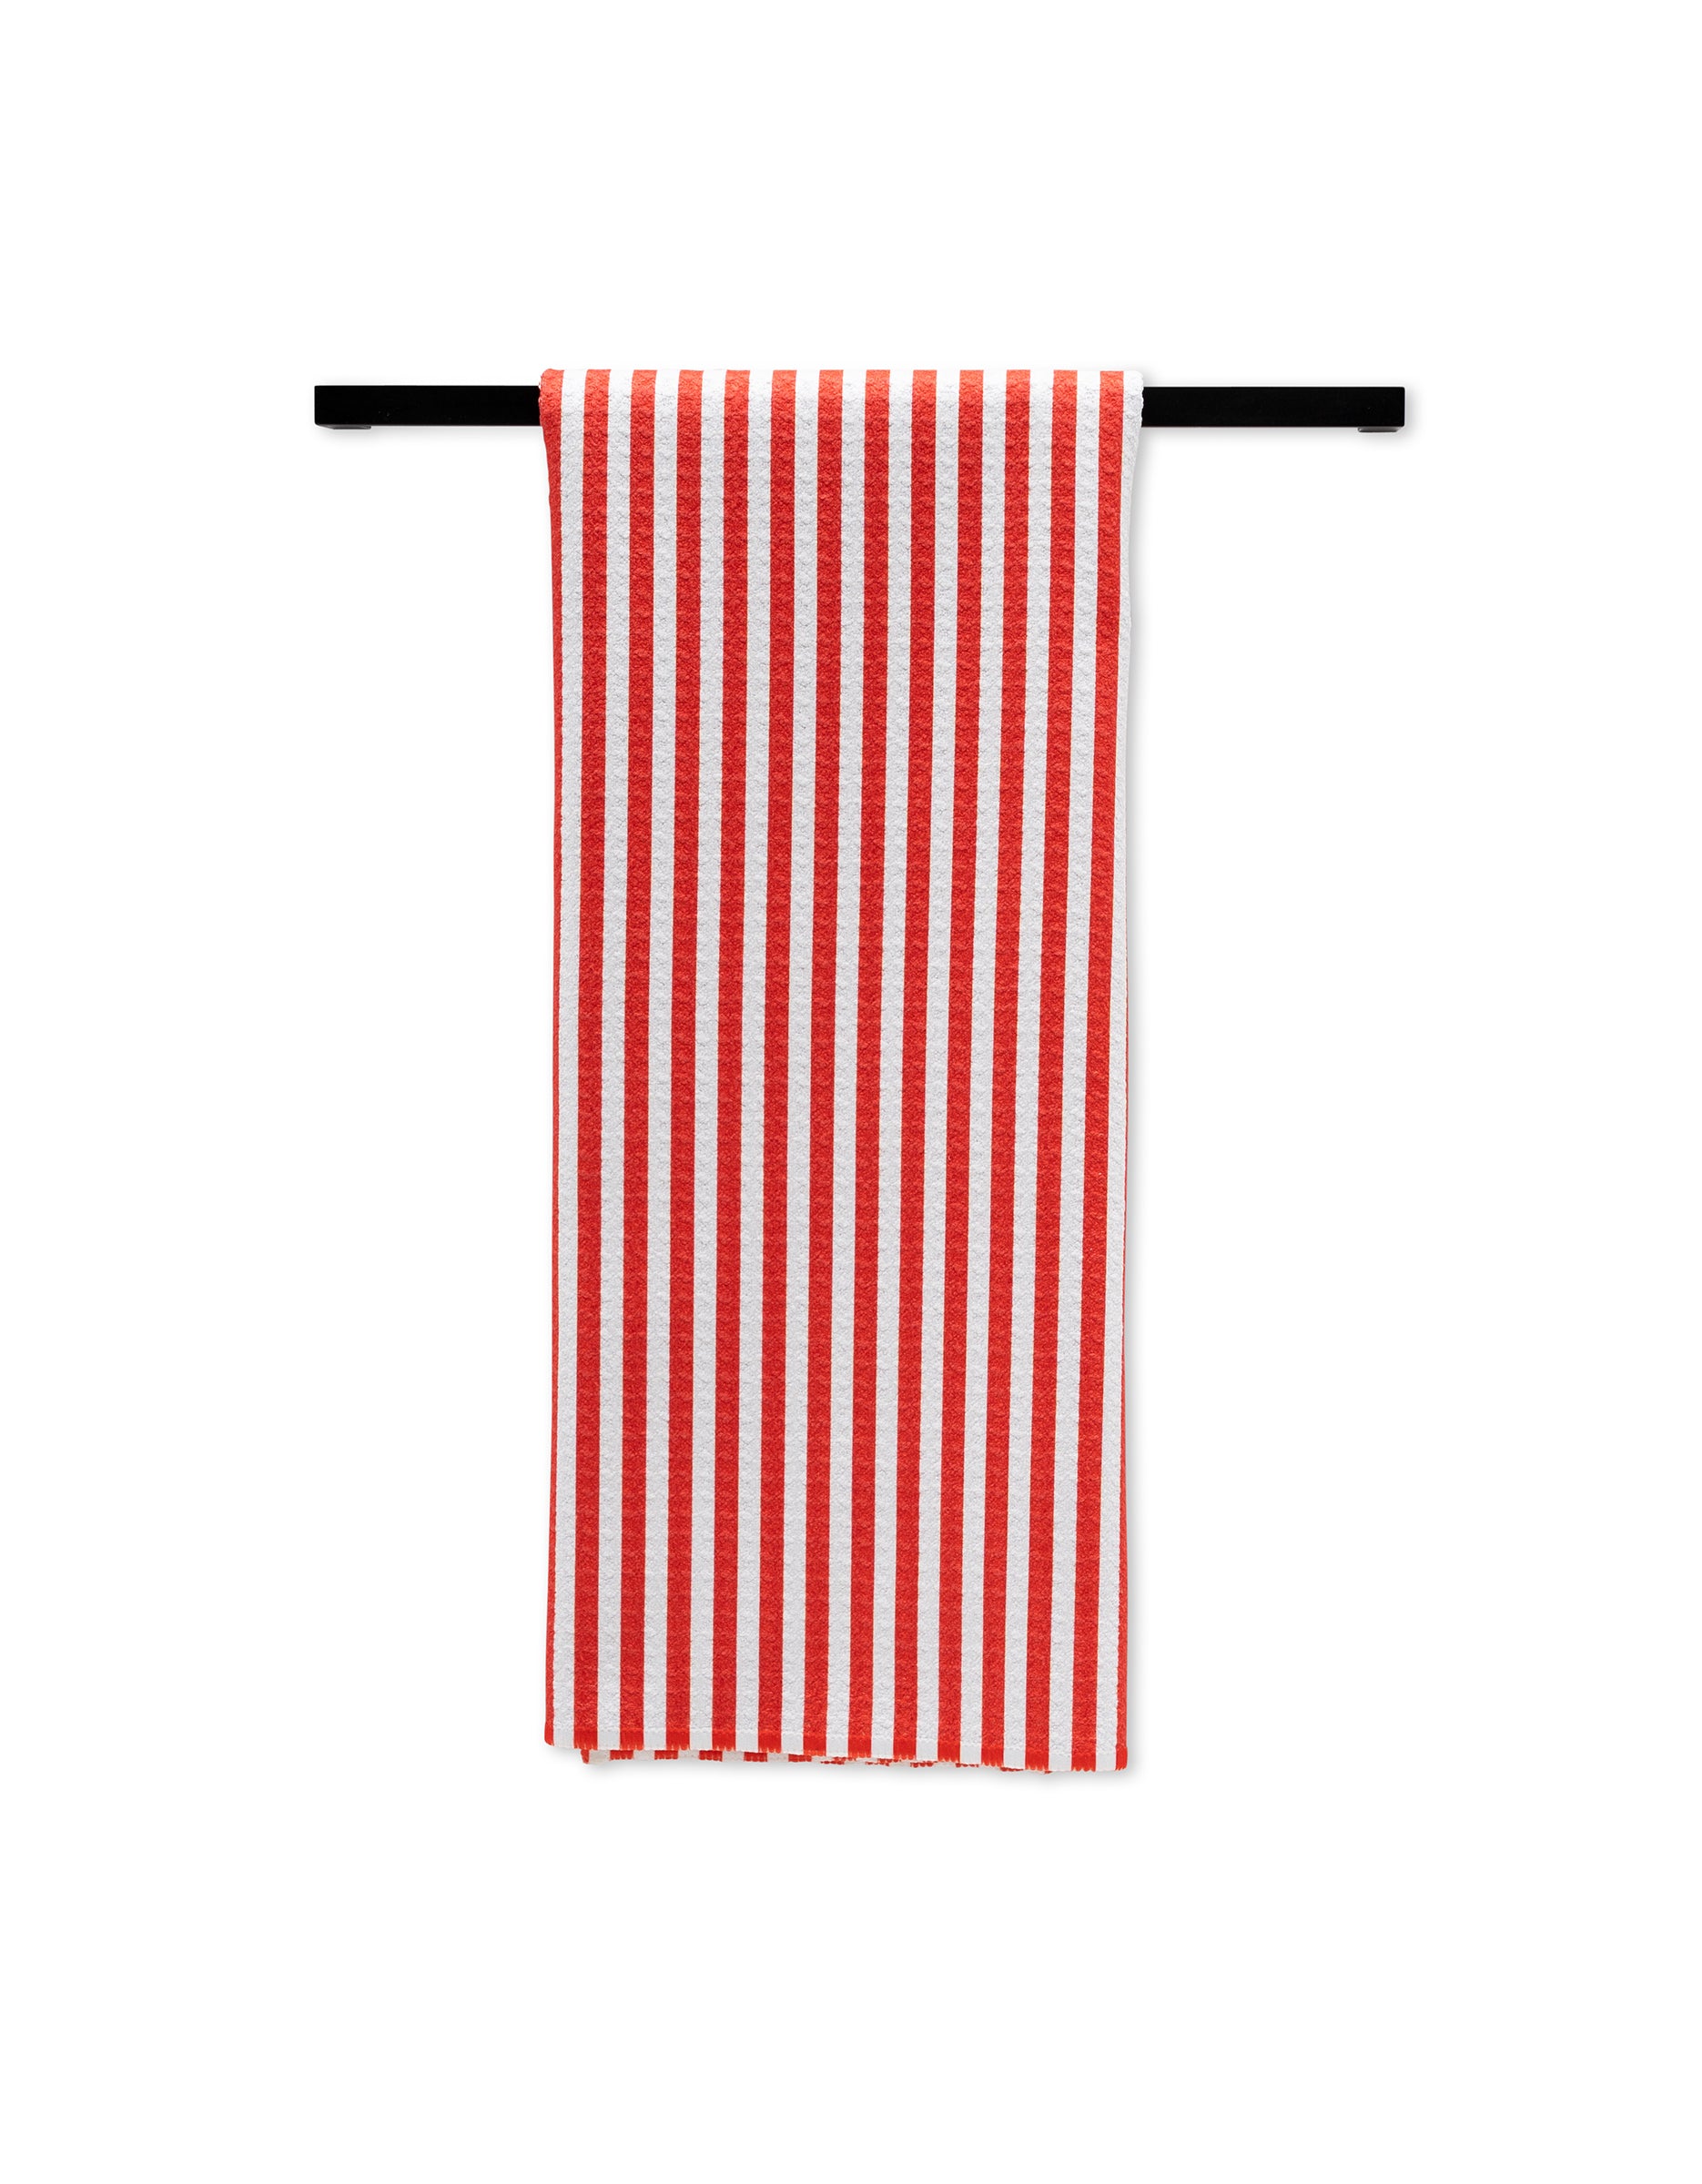 https://www.geometry.house/cdn/shop/files/TT-MF-summer-stripe-red-bar_2000x.jpg?v=1689813156